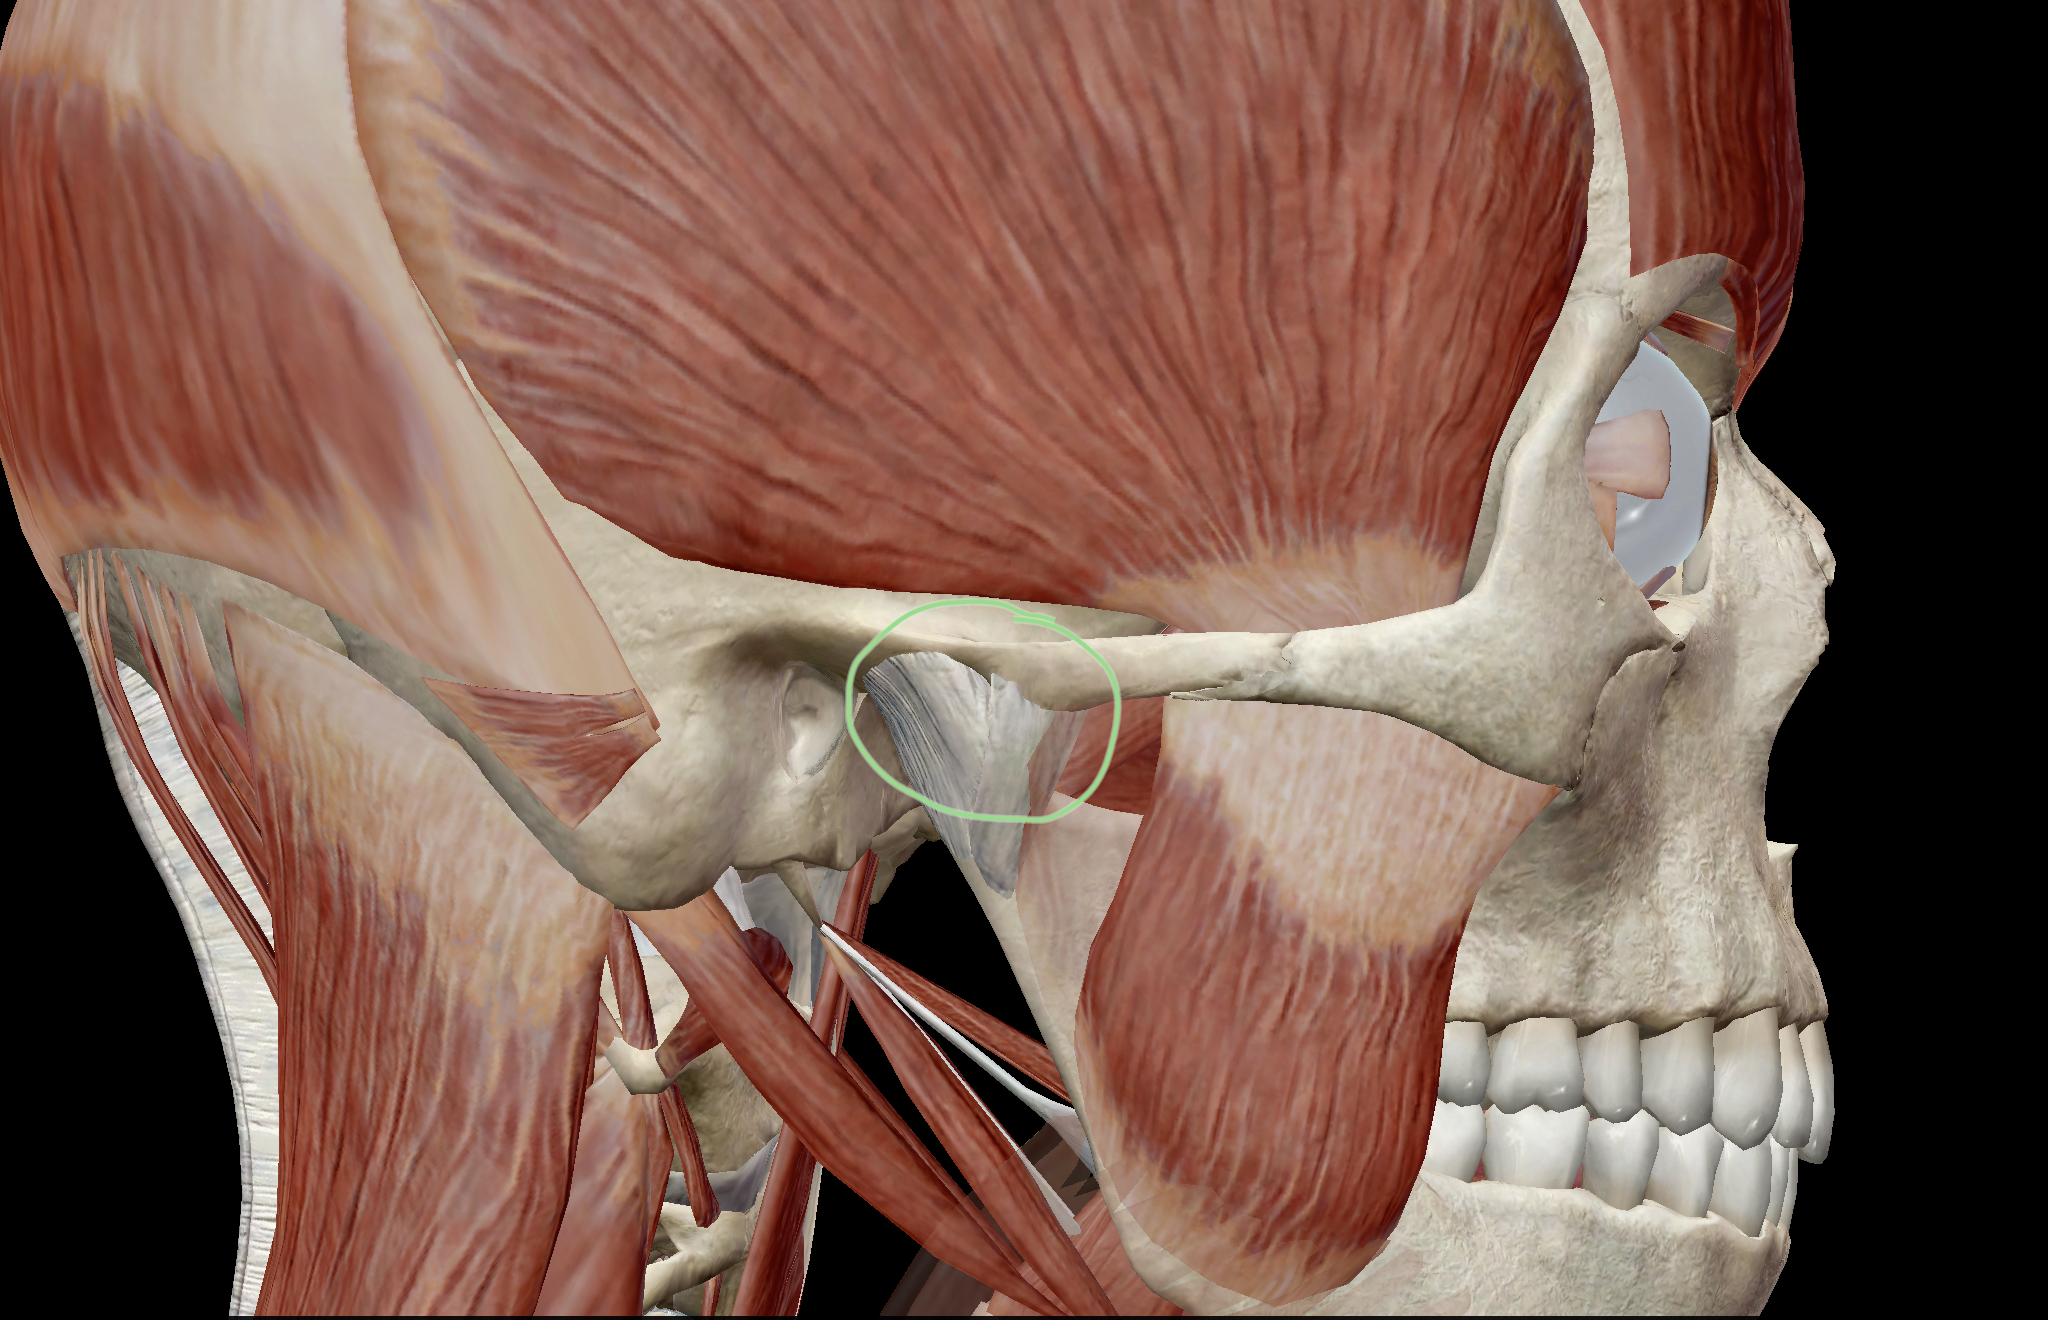 The temporomandibular joint, circled